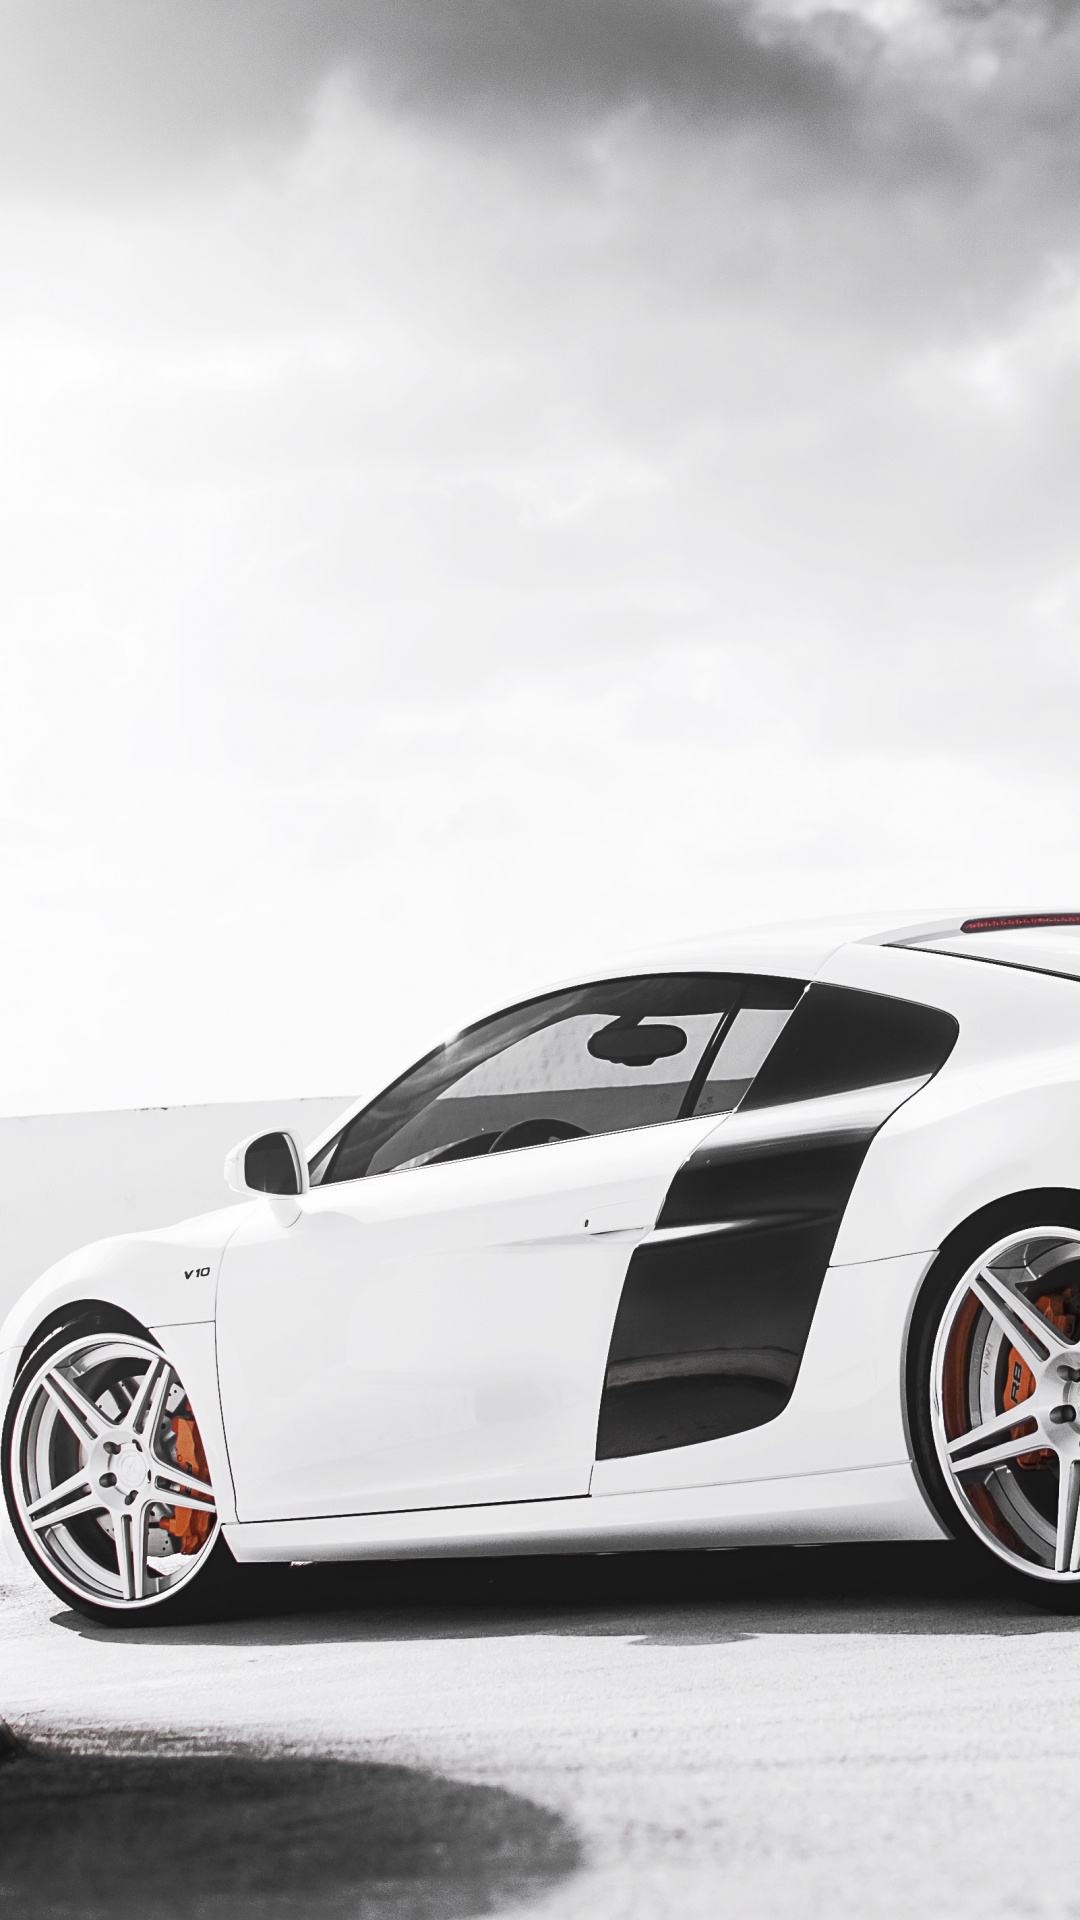 Weißer Porsche 911 Auf Schwarzer Oberfläche. Wallpaper in 1080x1920 Resolution